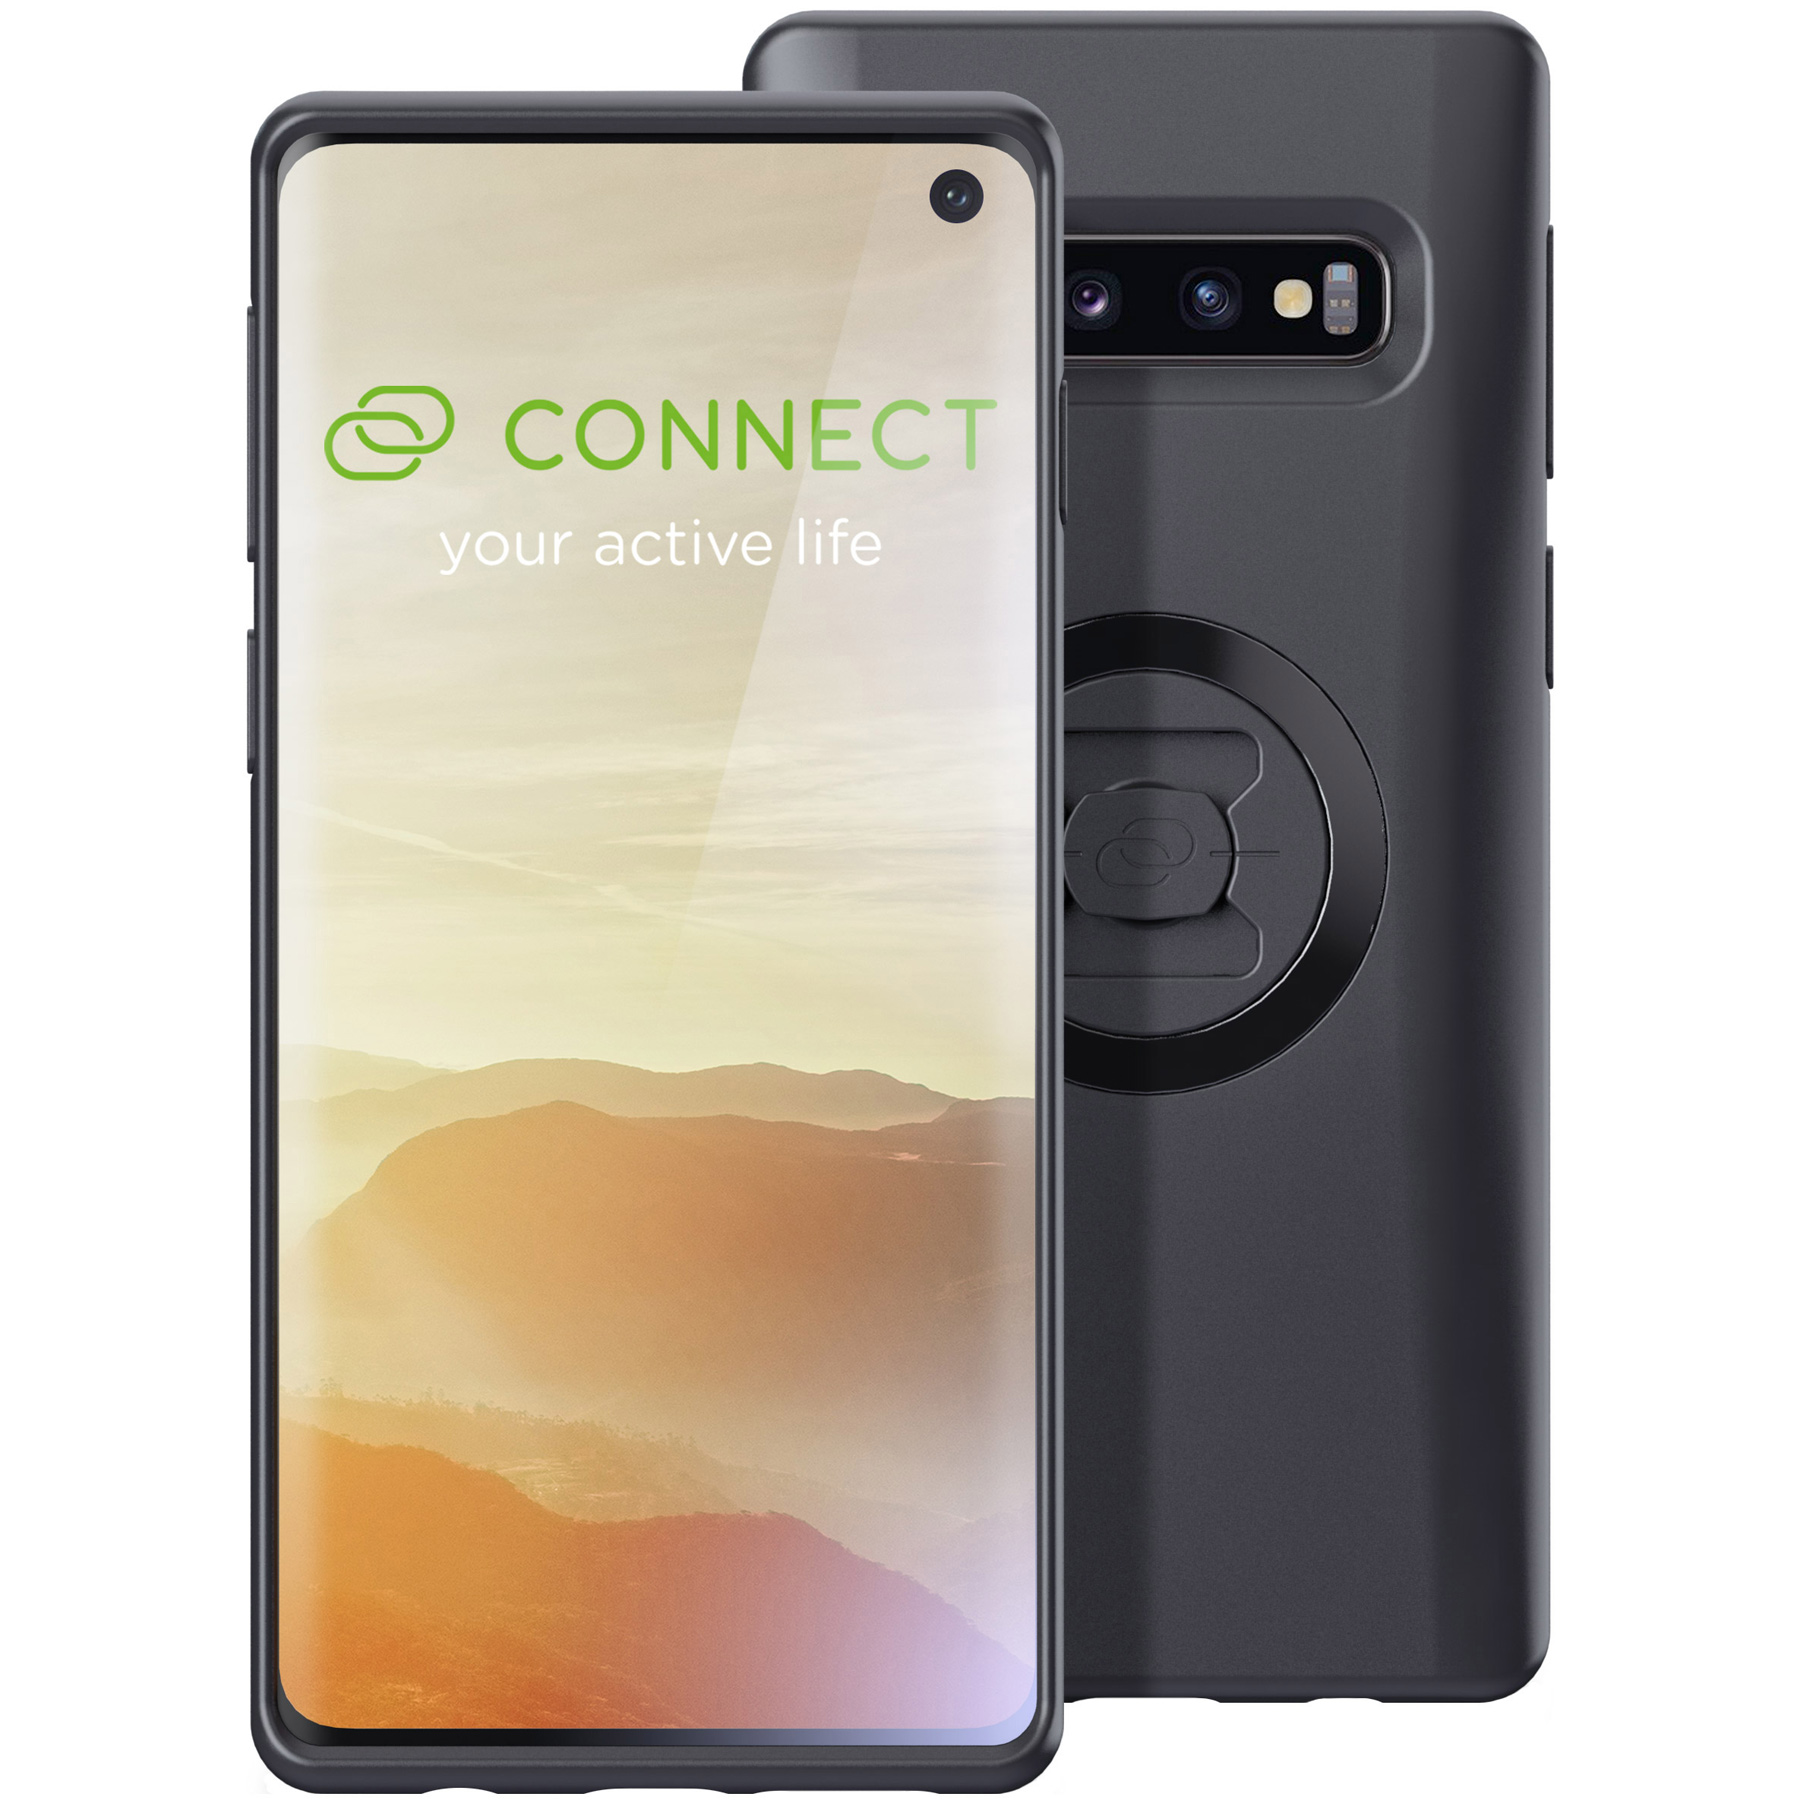 Produktbild von SP CONNECT Smartphone Case für Huawei